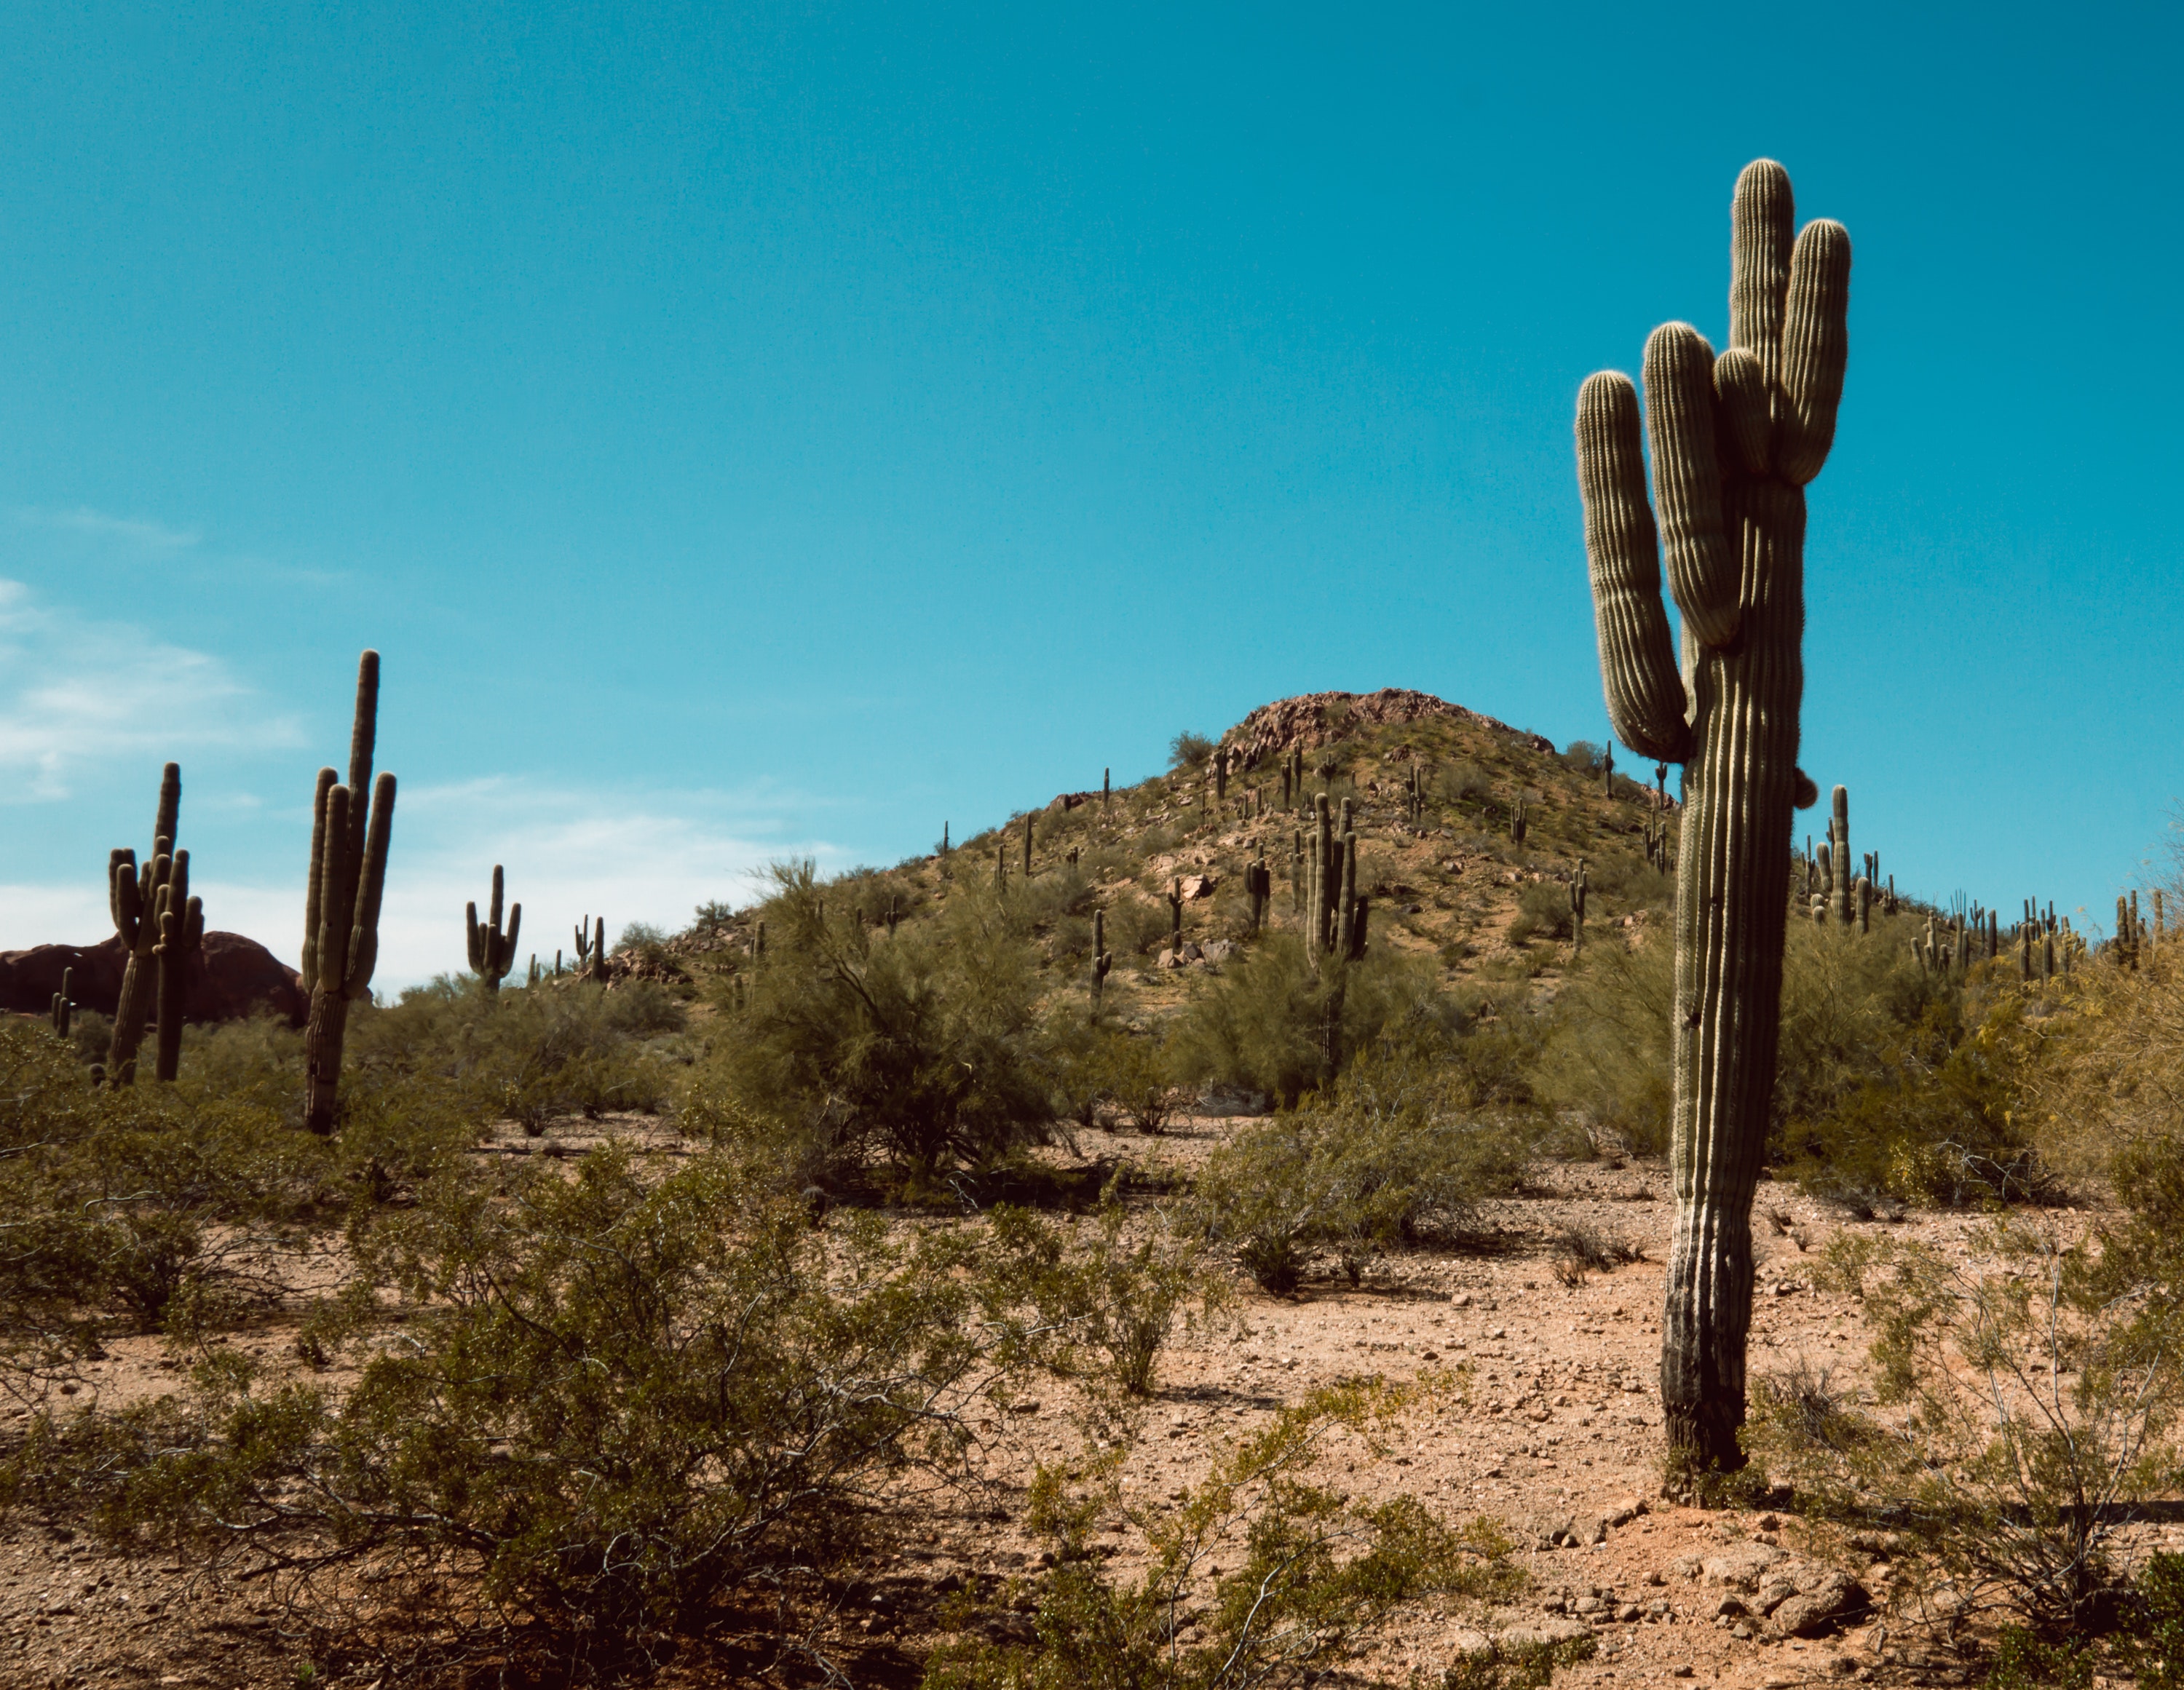 The Arizona desert.